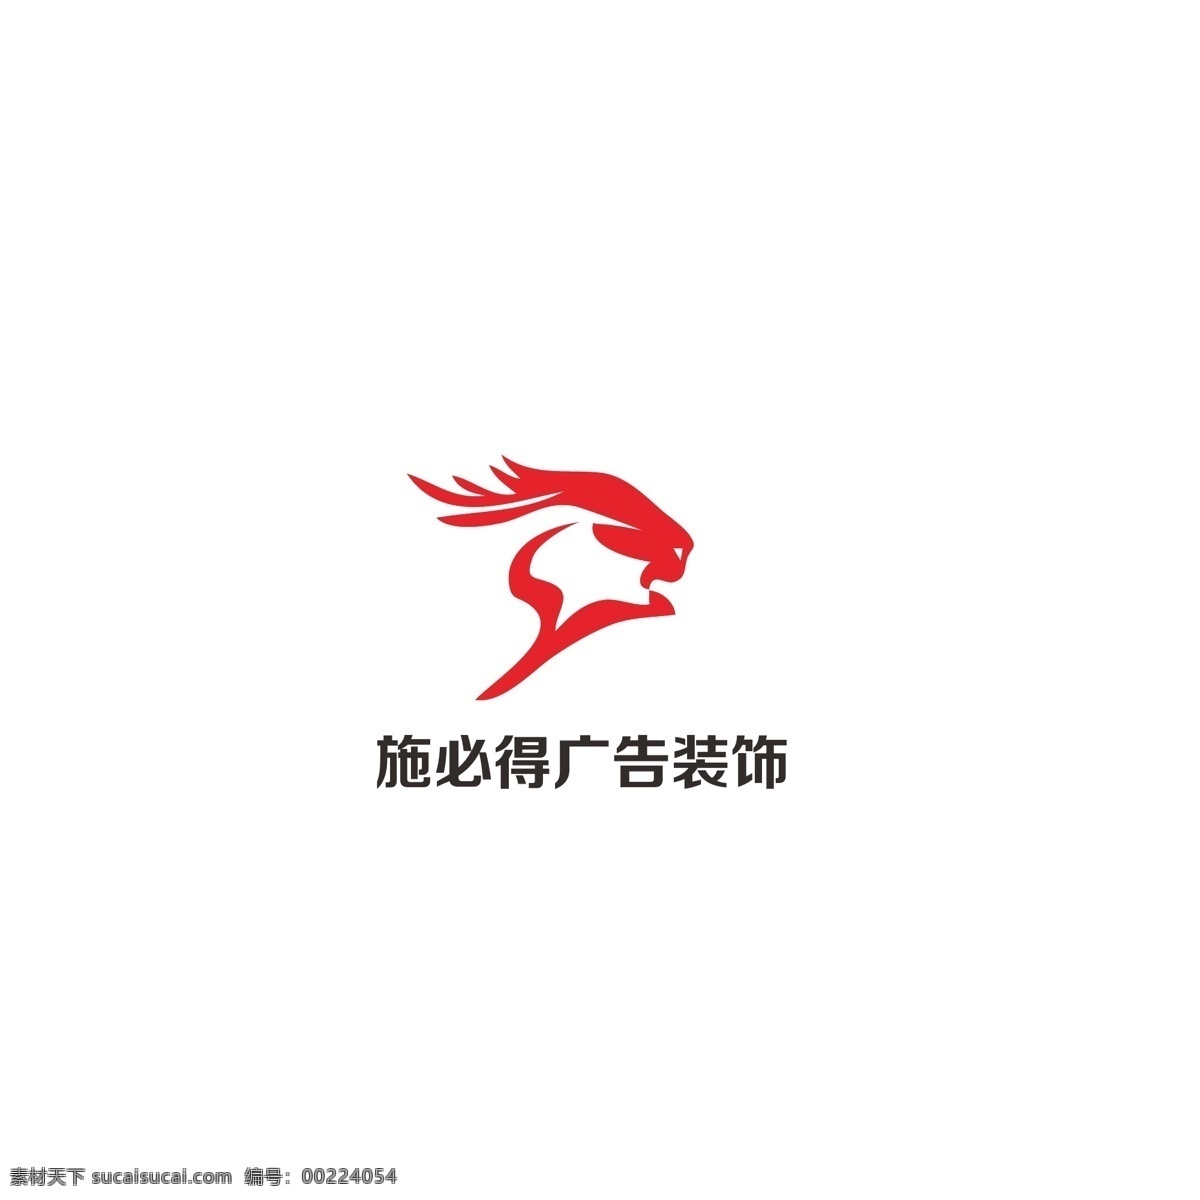 广告装饰 logo 简约 动物 冲击 发展